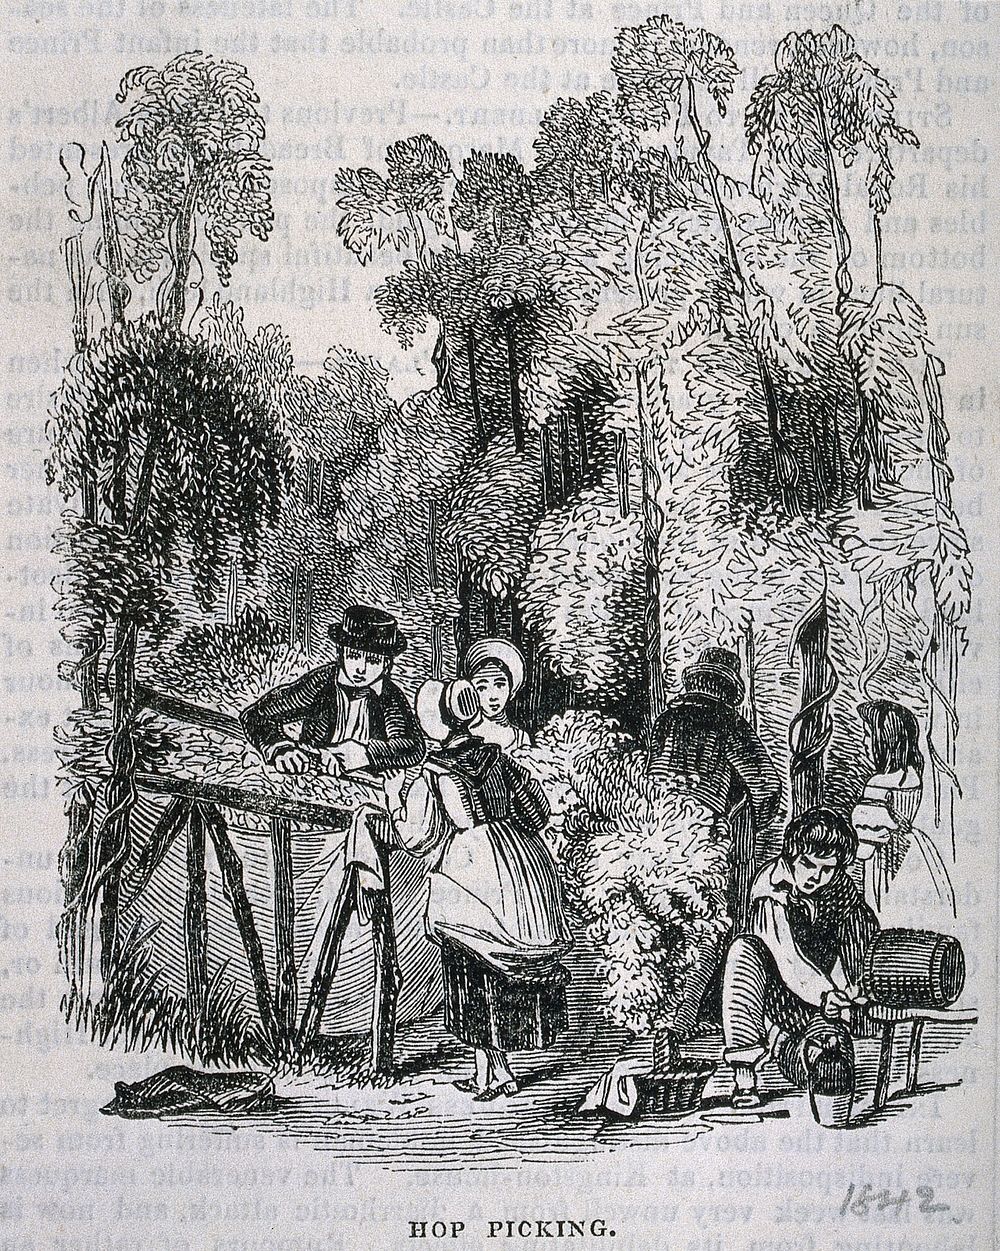 Hop pickers at work. Wood-engraving, c. 1842 .